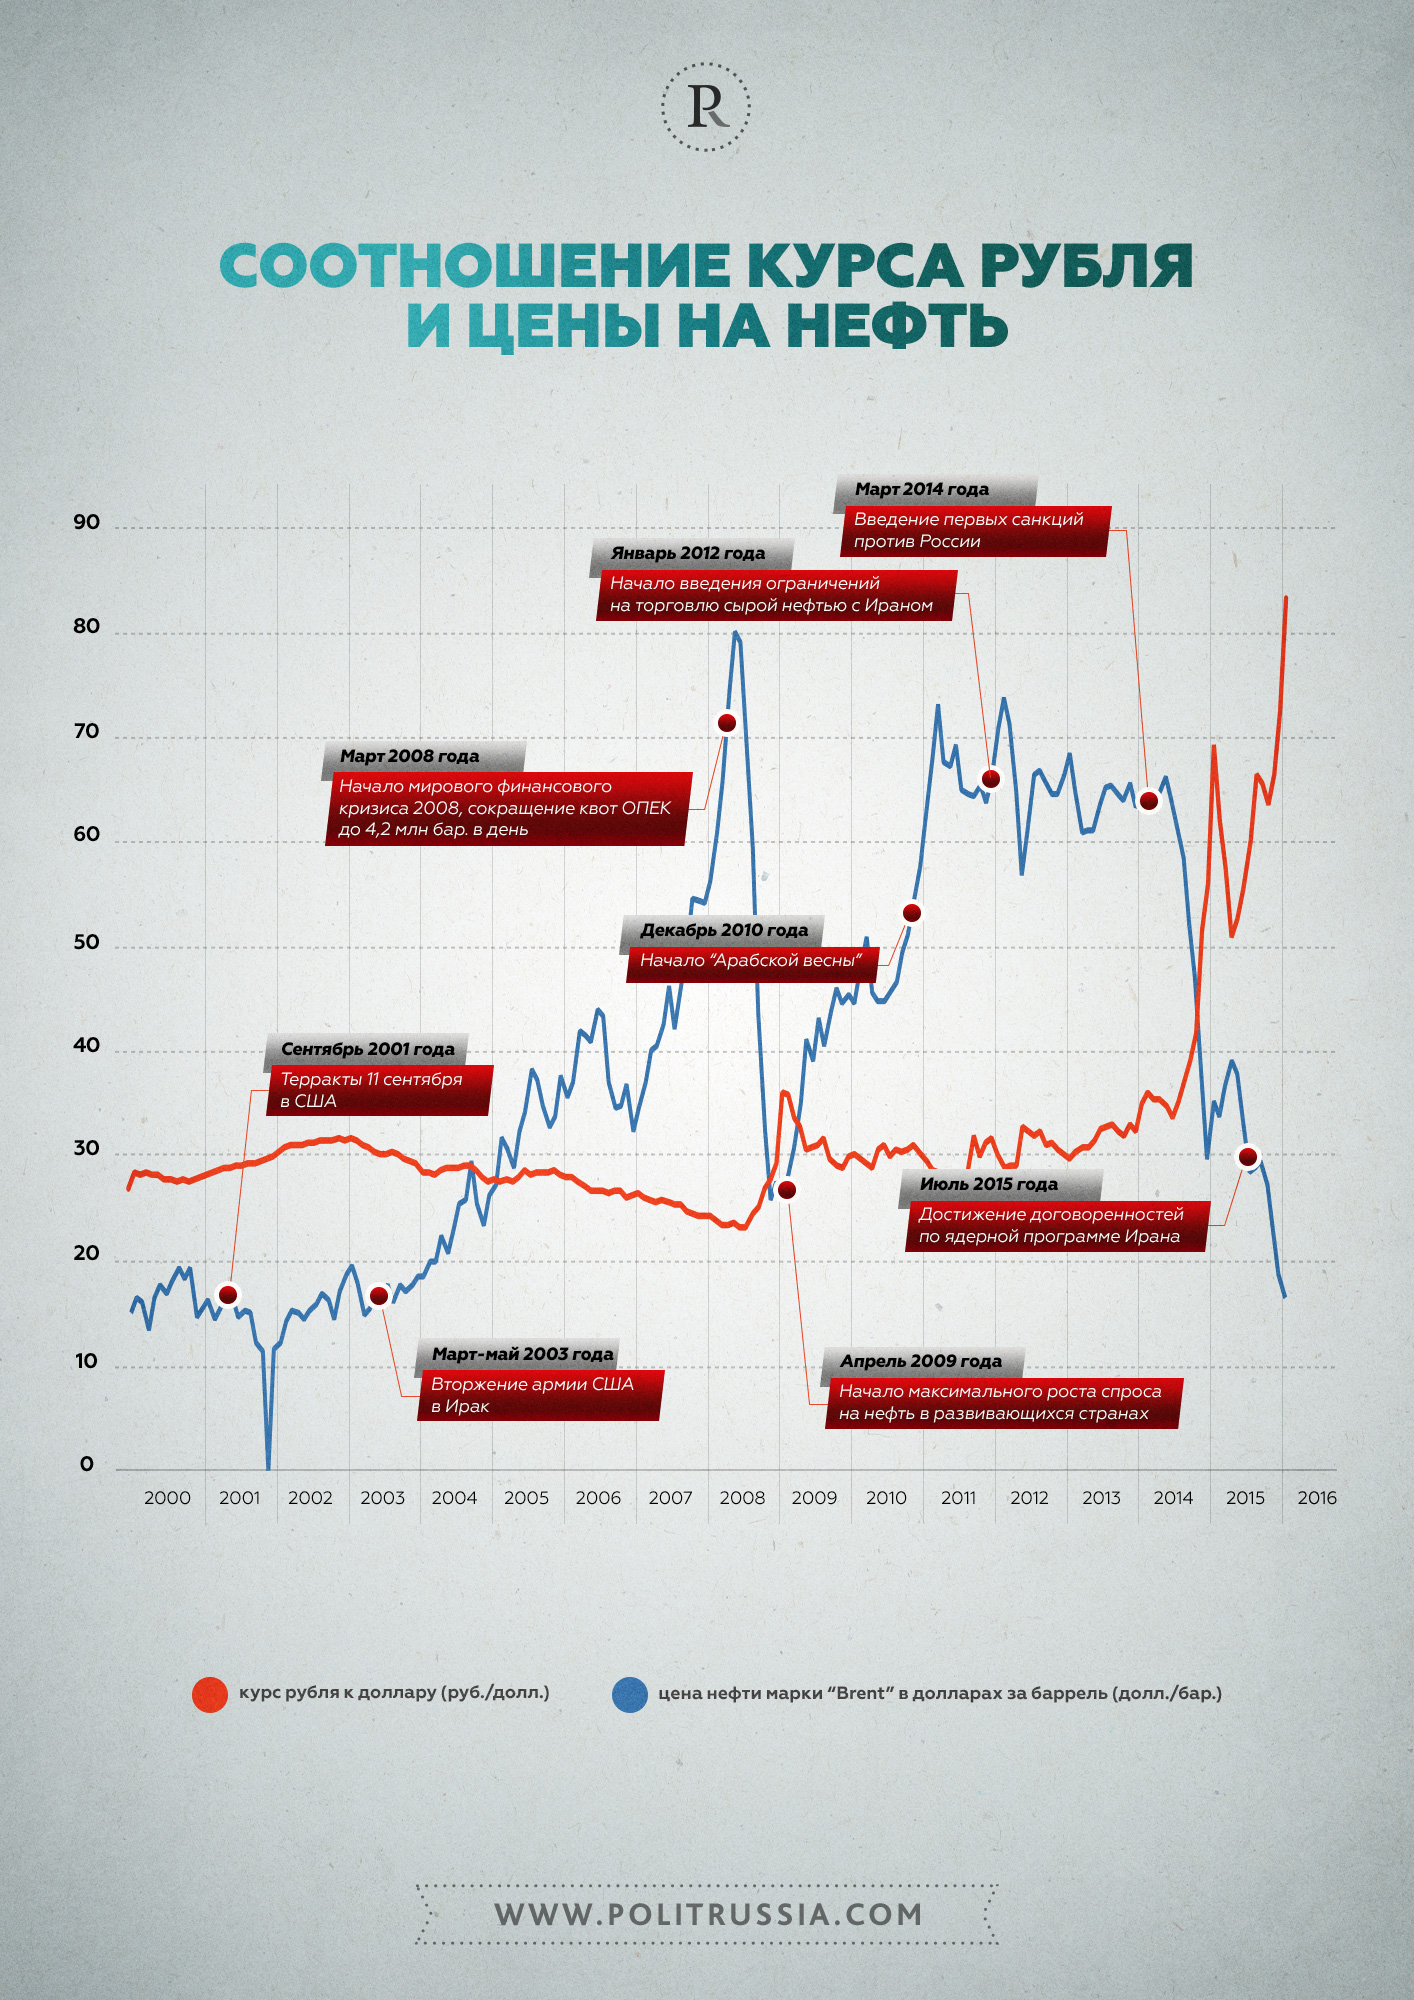 Курс рубля в 2012 году в россии. Курс рубля. Динамика цен на нефть и ГАЗ. Курс нефти. Изменение цен на нефть.